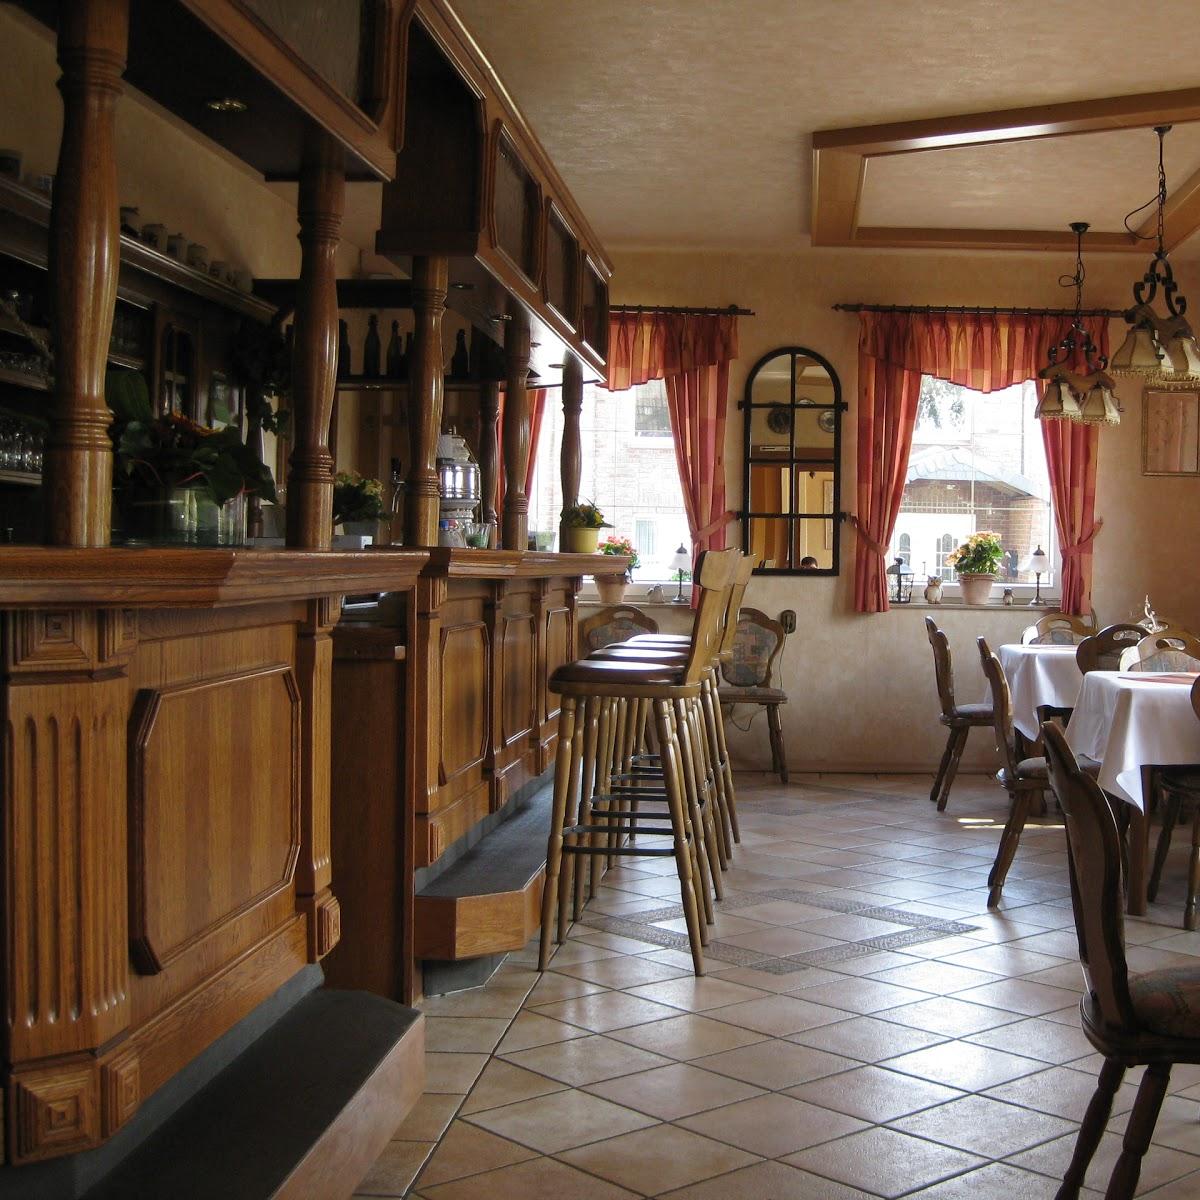 Restaurant "Gasthaus Zum Alten Haeseler" in  Negenharrie